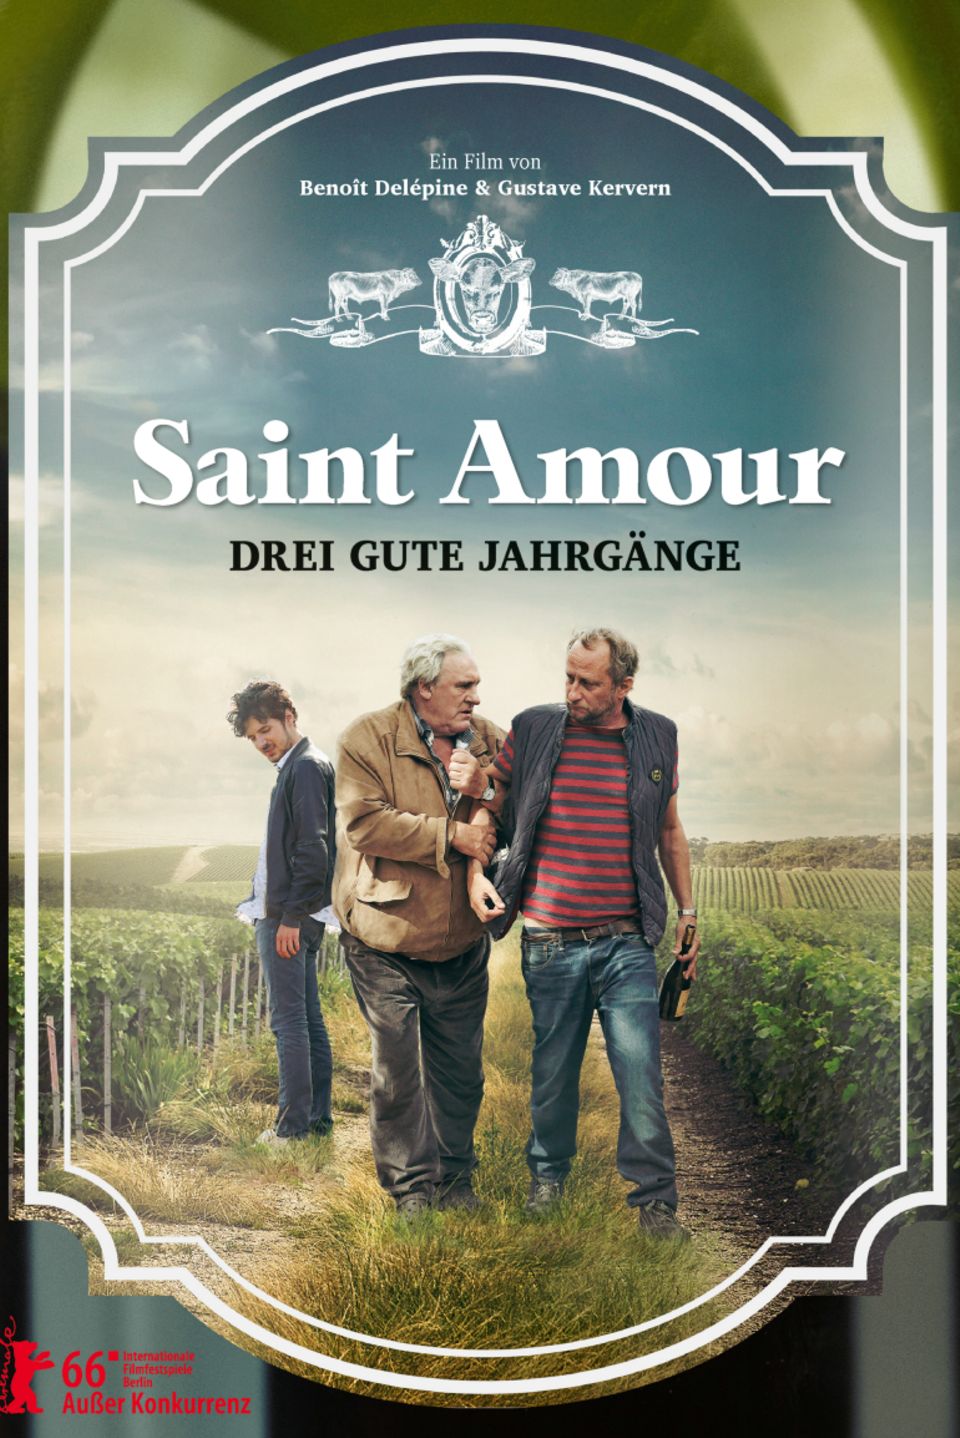 "Saint Amour - Drei gute Jahrgänge", 2016